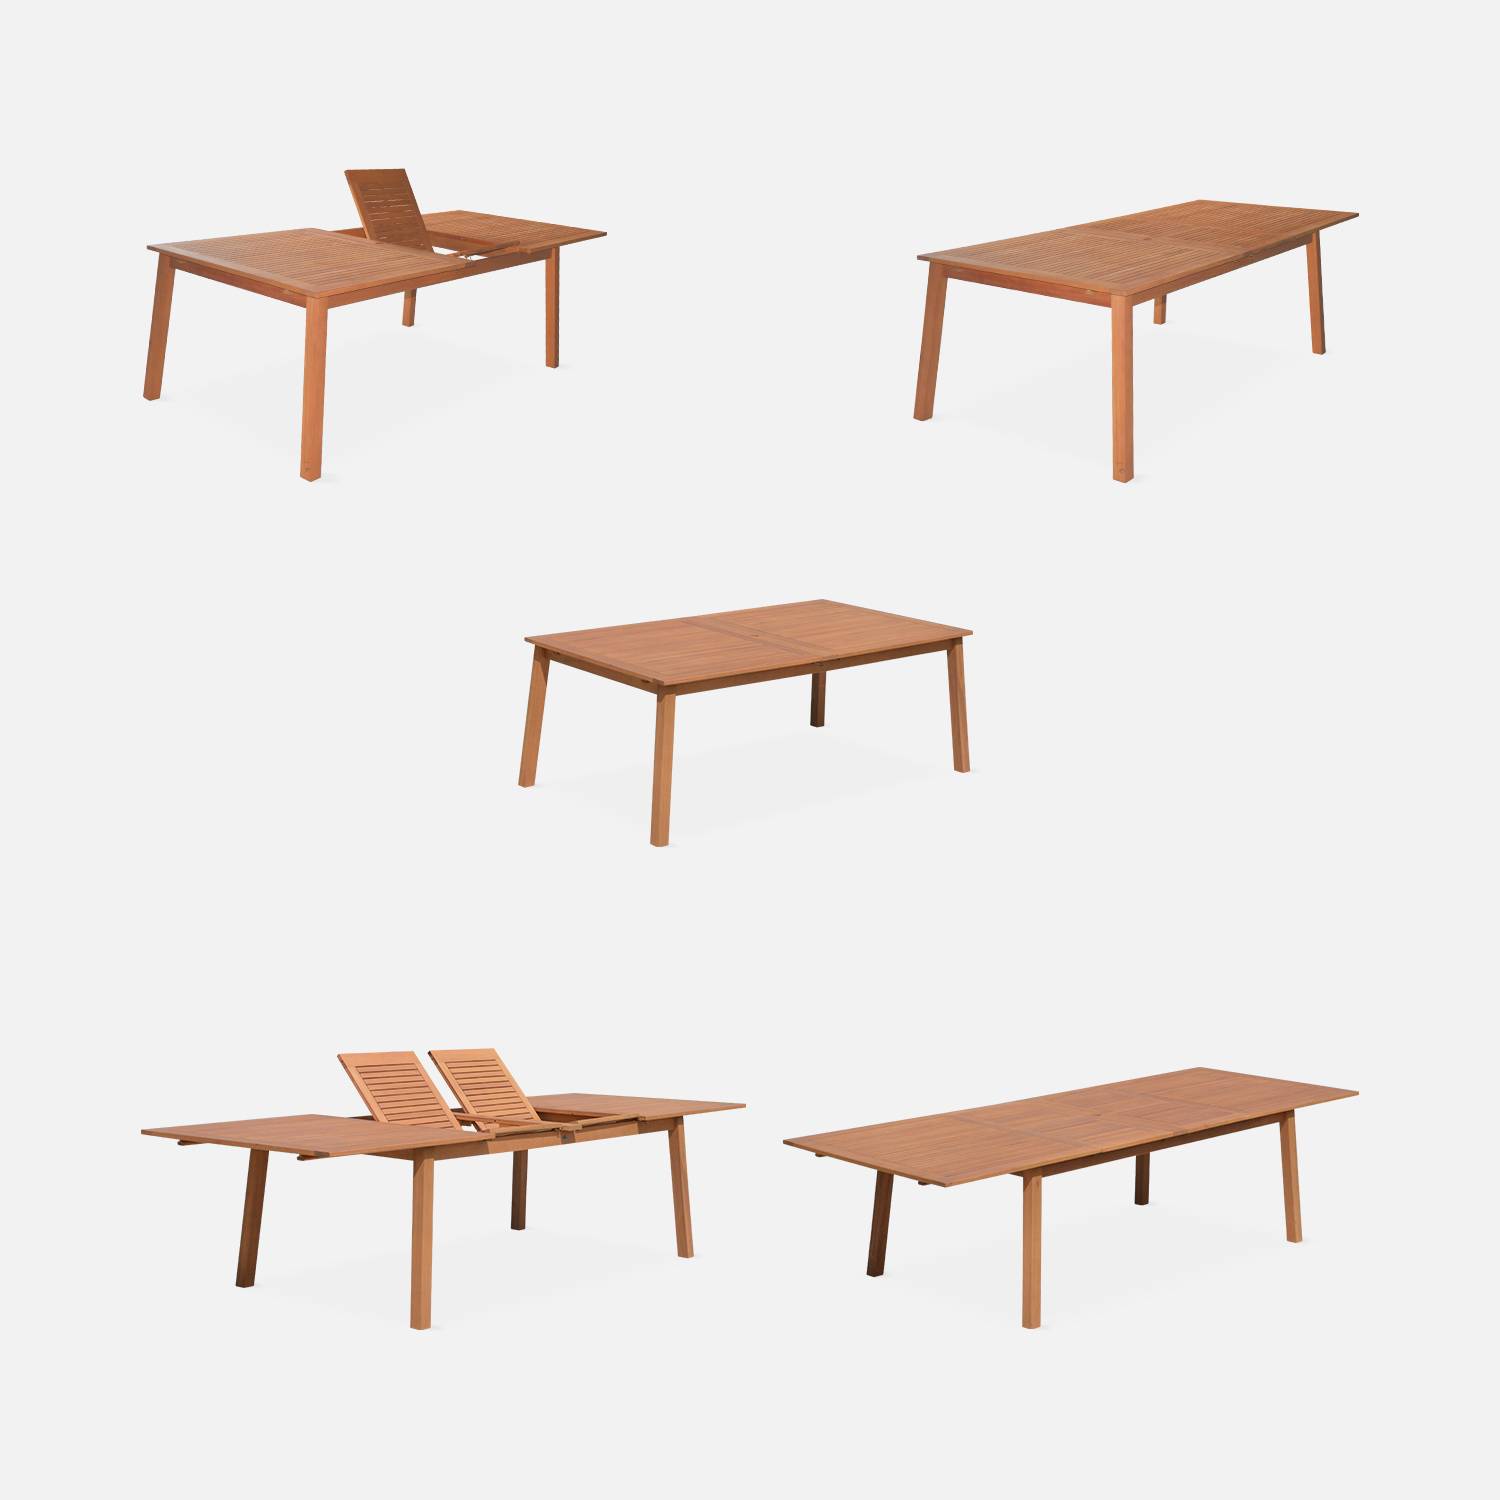 Ausziehbare Gartenmöbel aus Holz - Almeria Tisch 200/250/300cm mit 2 Verlängerungen, 2 Sesseln und 8 Stühlen, aus geöltem FSC Eukalyptusholz und taupgrau Textilene Photo5